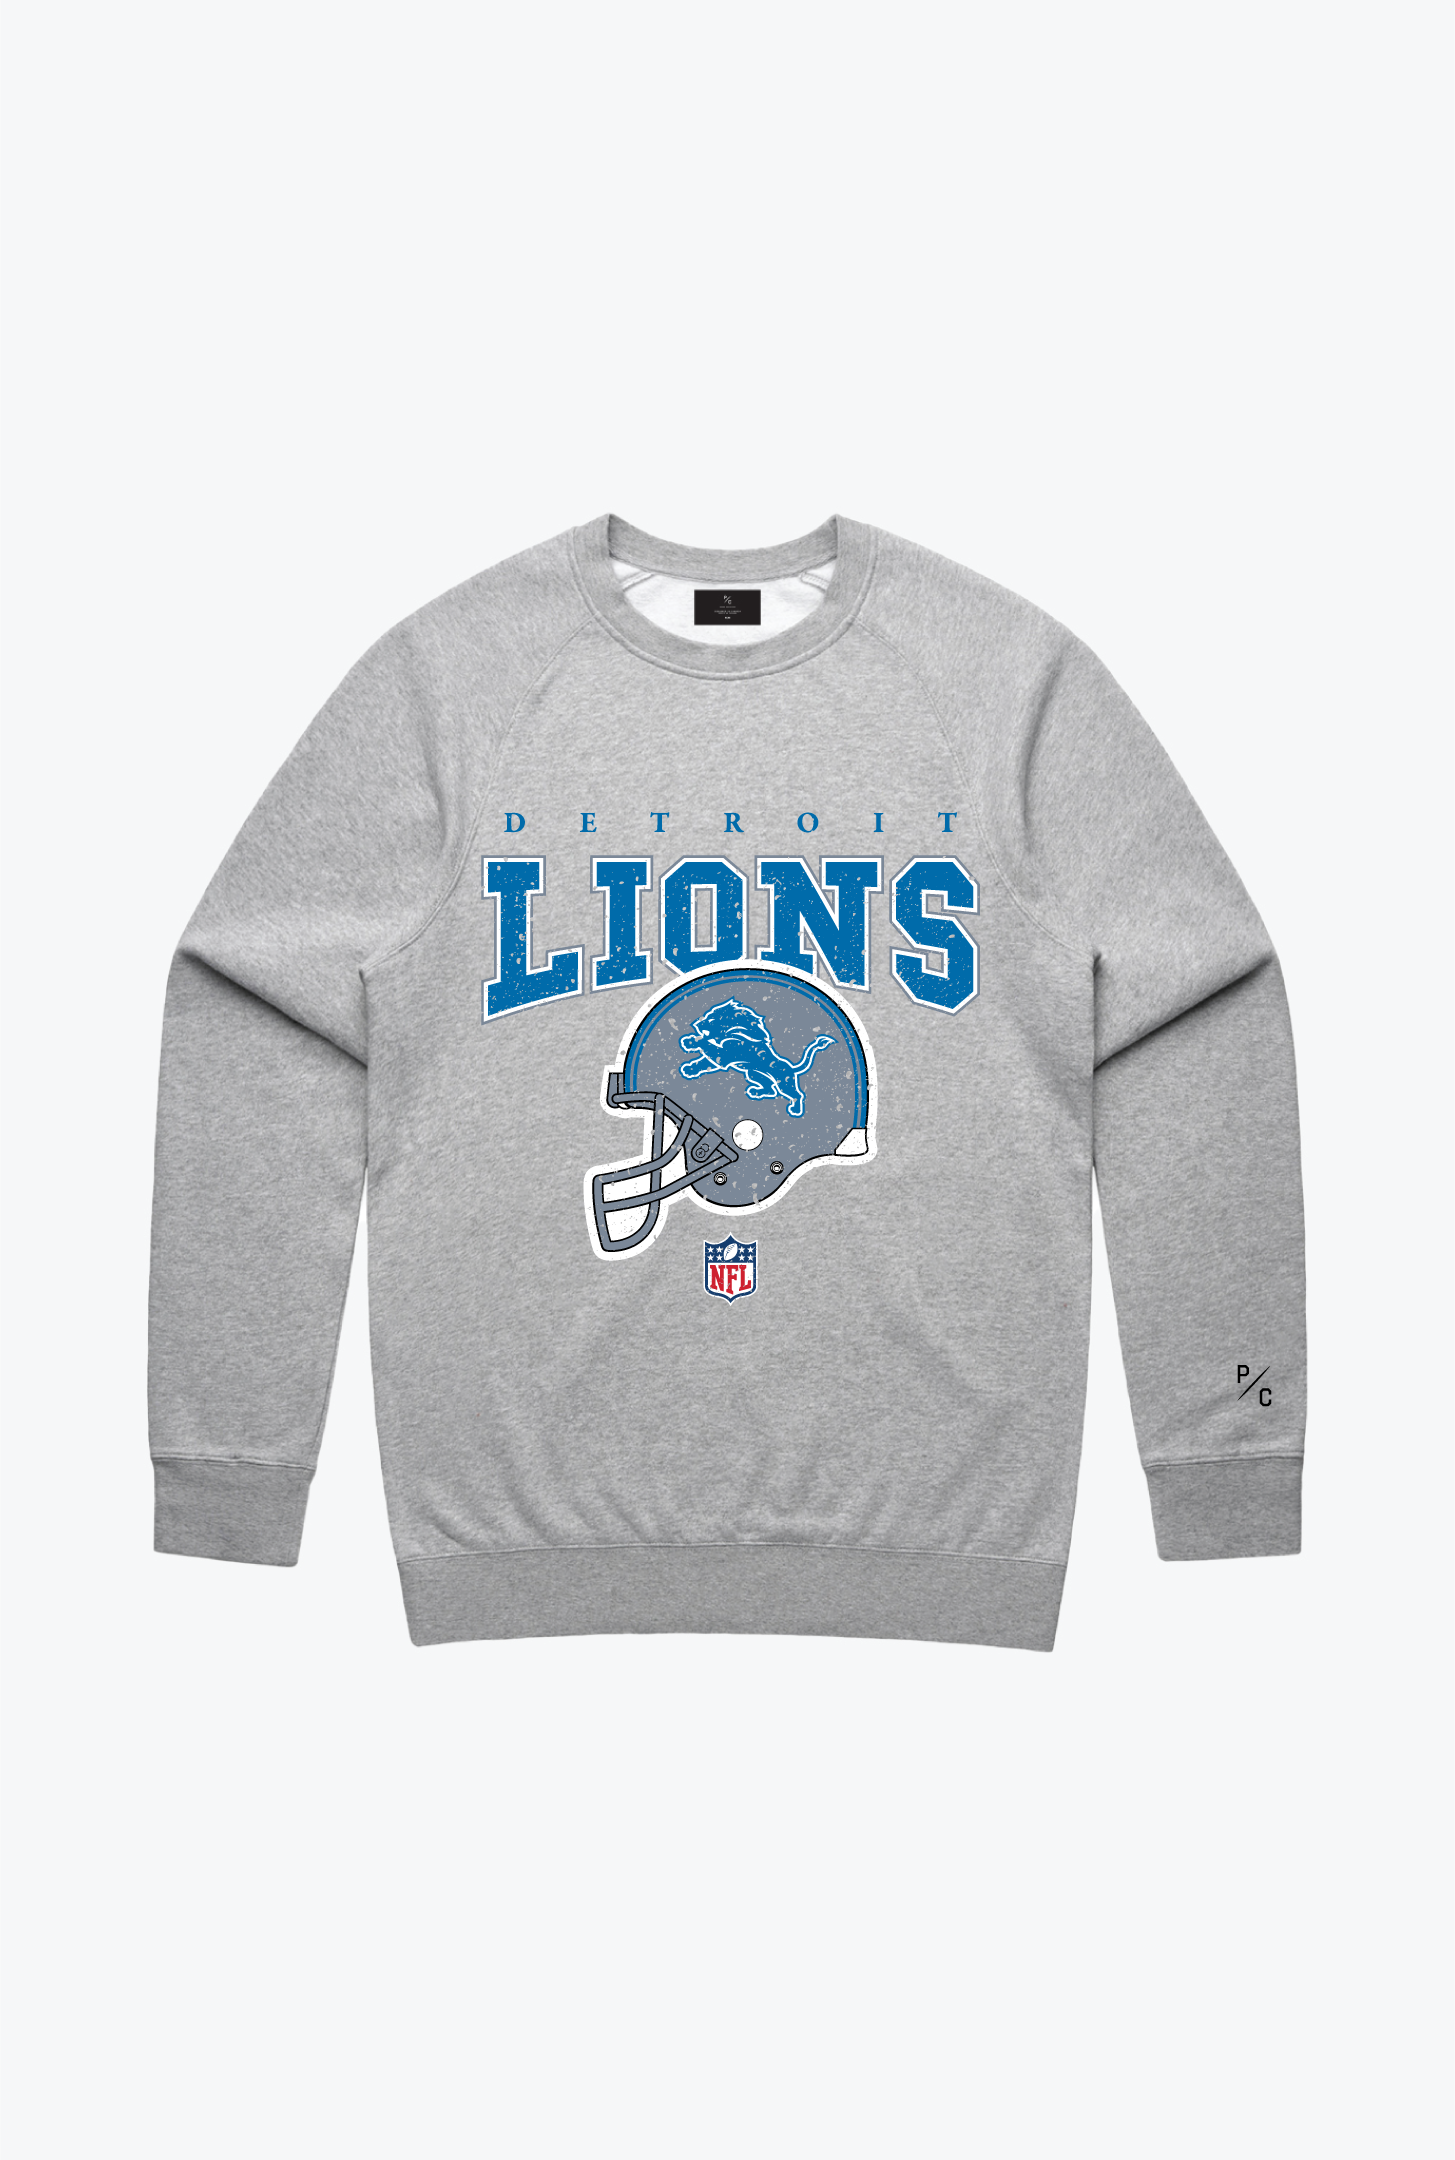 Detroit Lions Vintage Crewneck - Grey